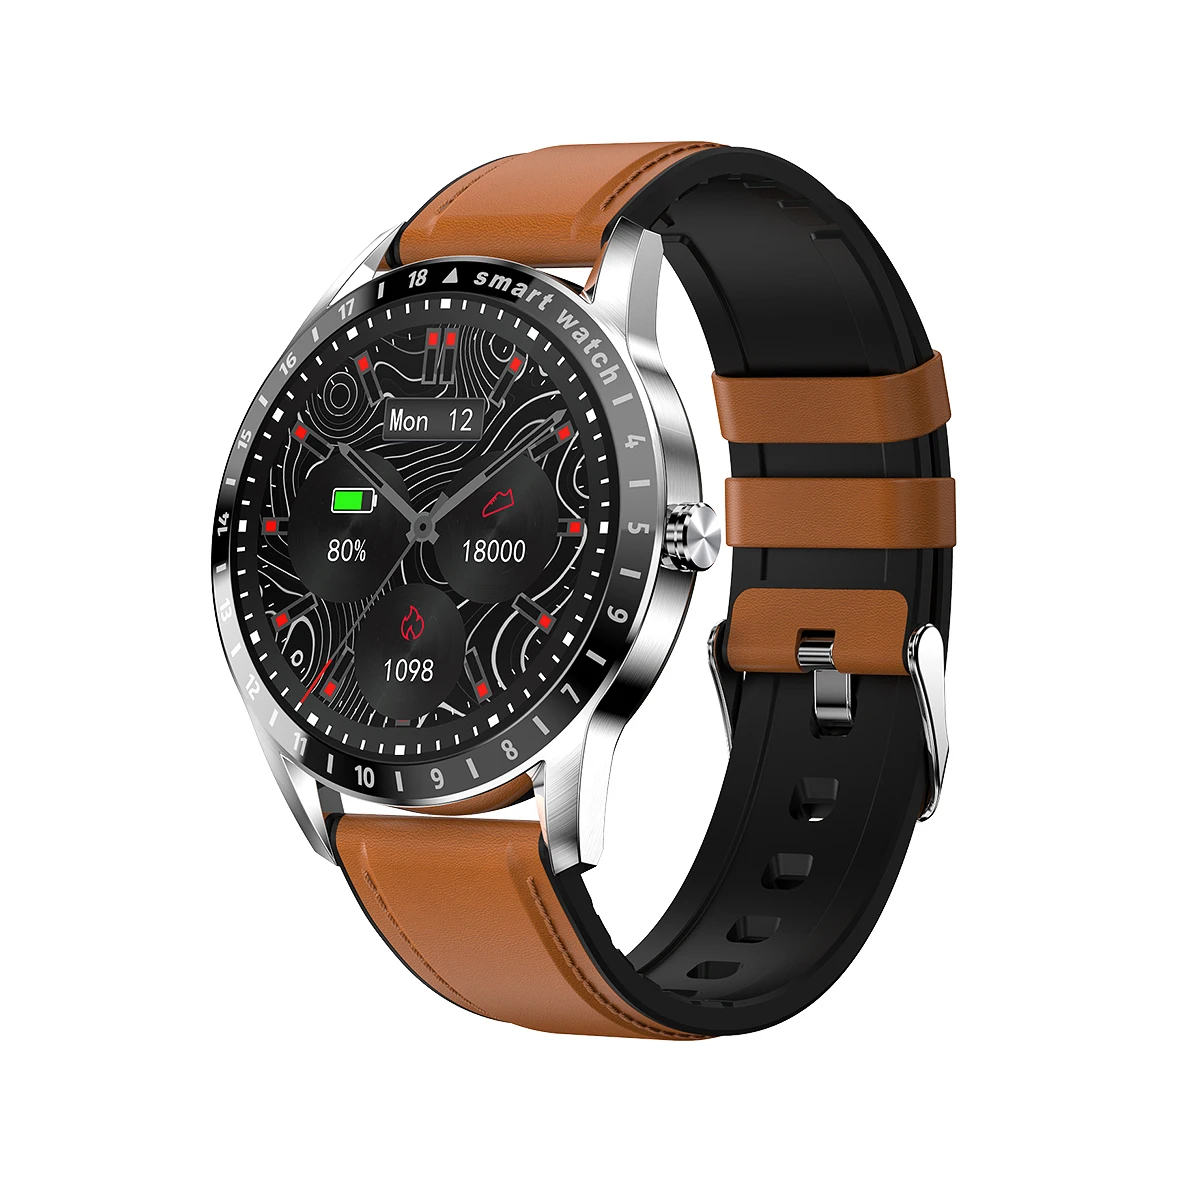 

2021 Ready to ship New Sport watch waterproof Unisex Smart watches LA10 men women OEM/ODM IP68 Waterproof 1.39 Inch AMOLED